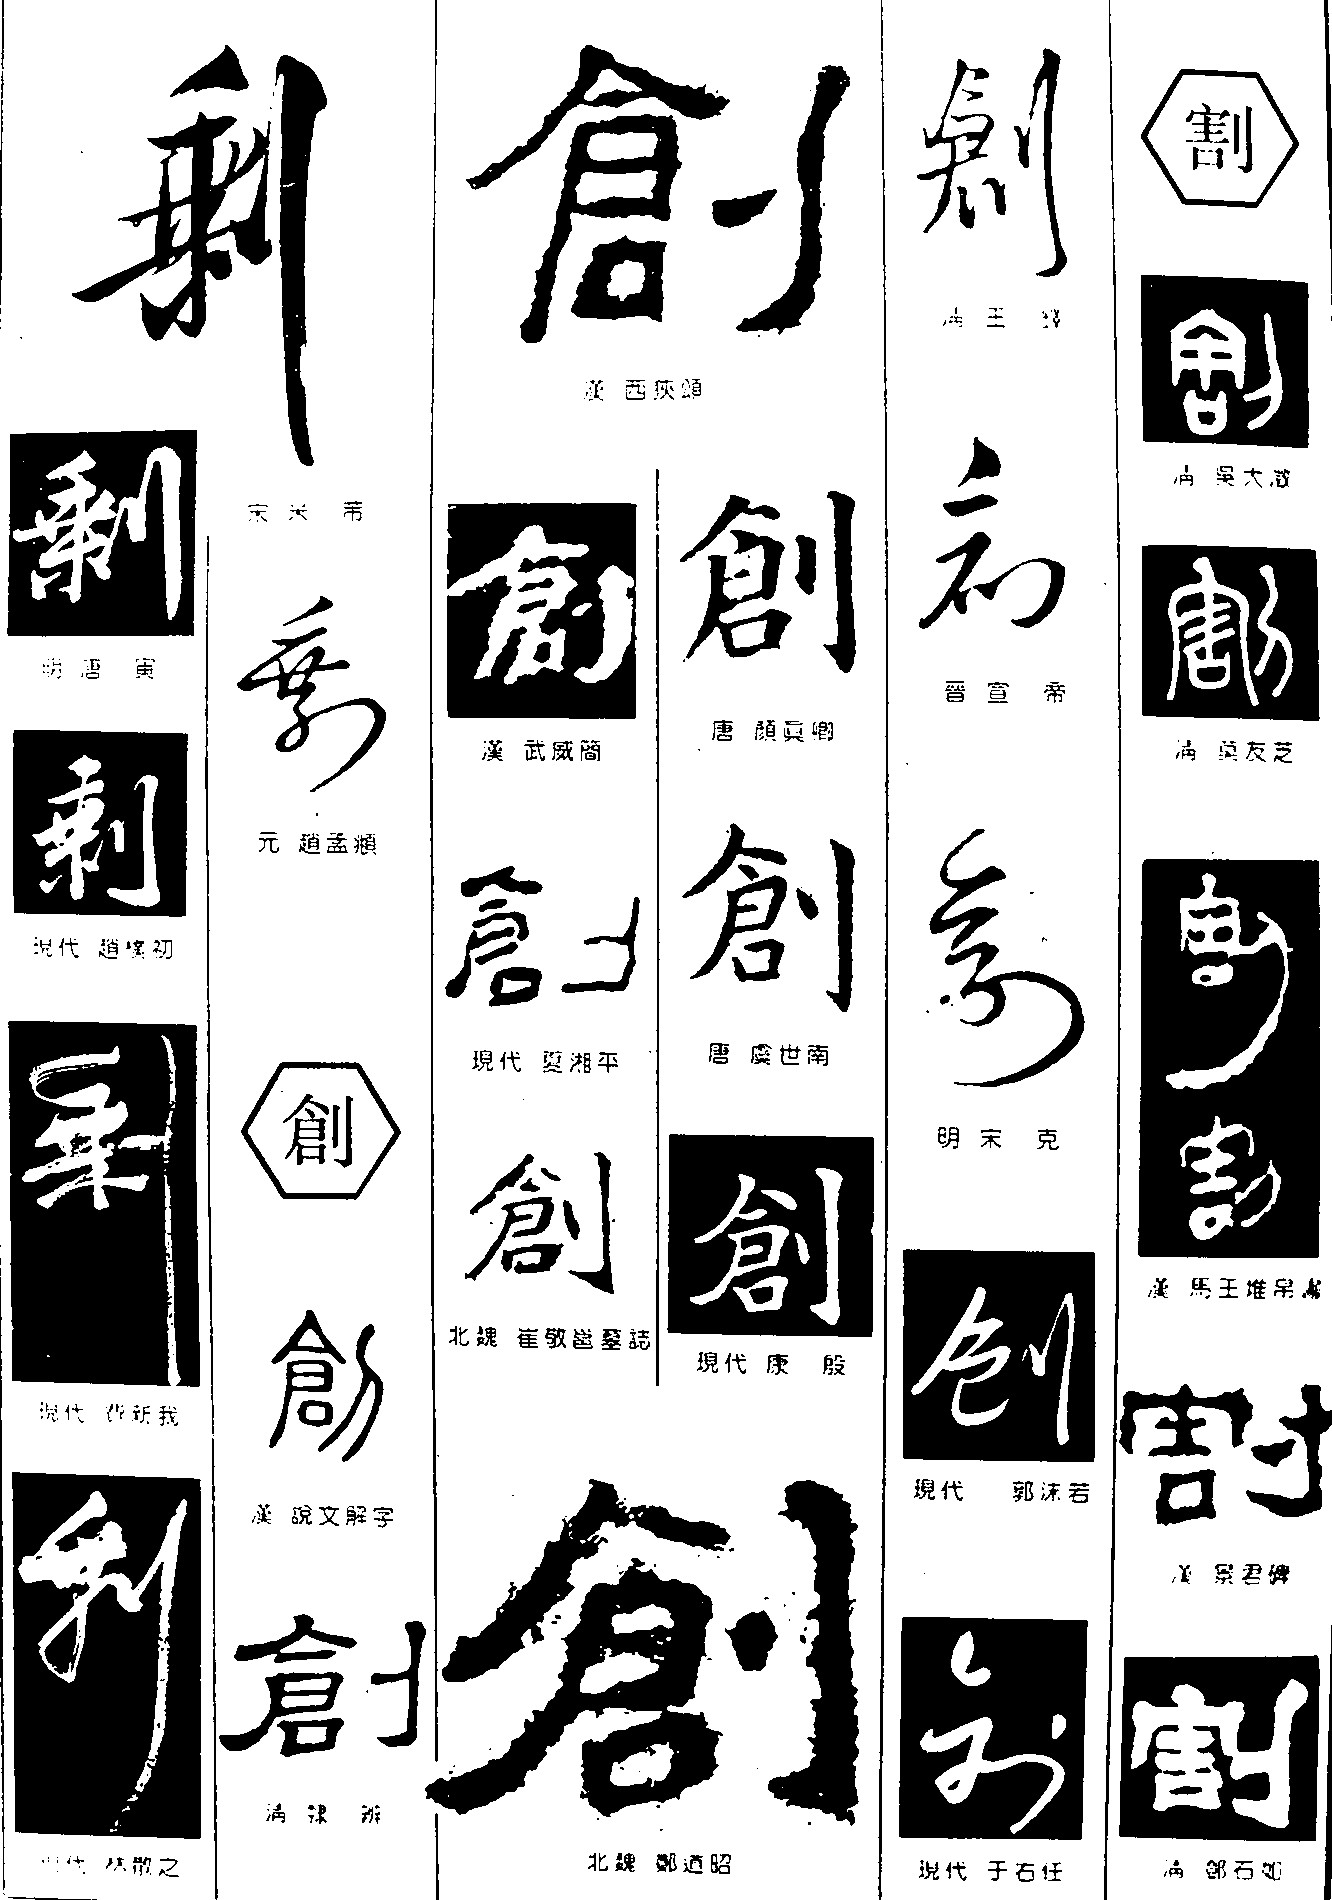 剩创割_书法字体_字体设计作品-中国字体设计网_ziti.